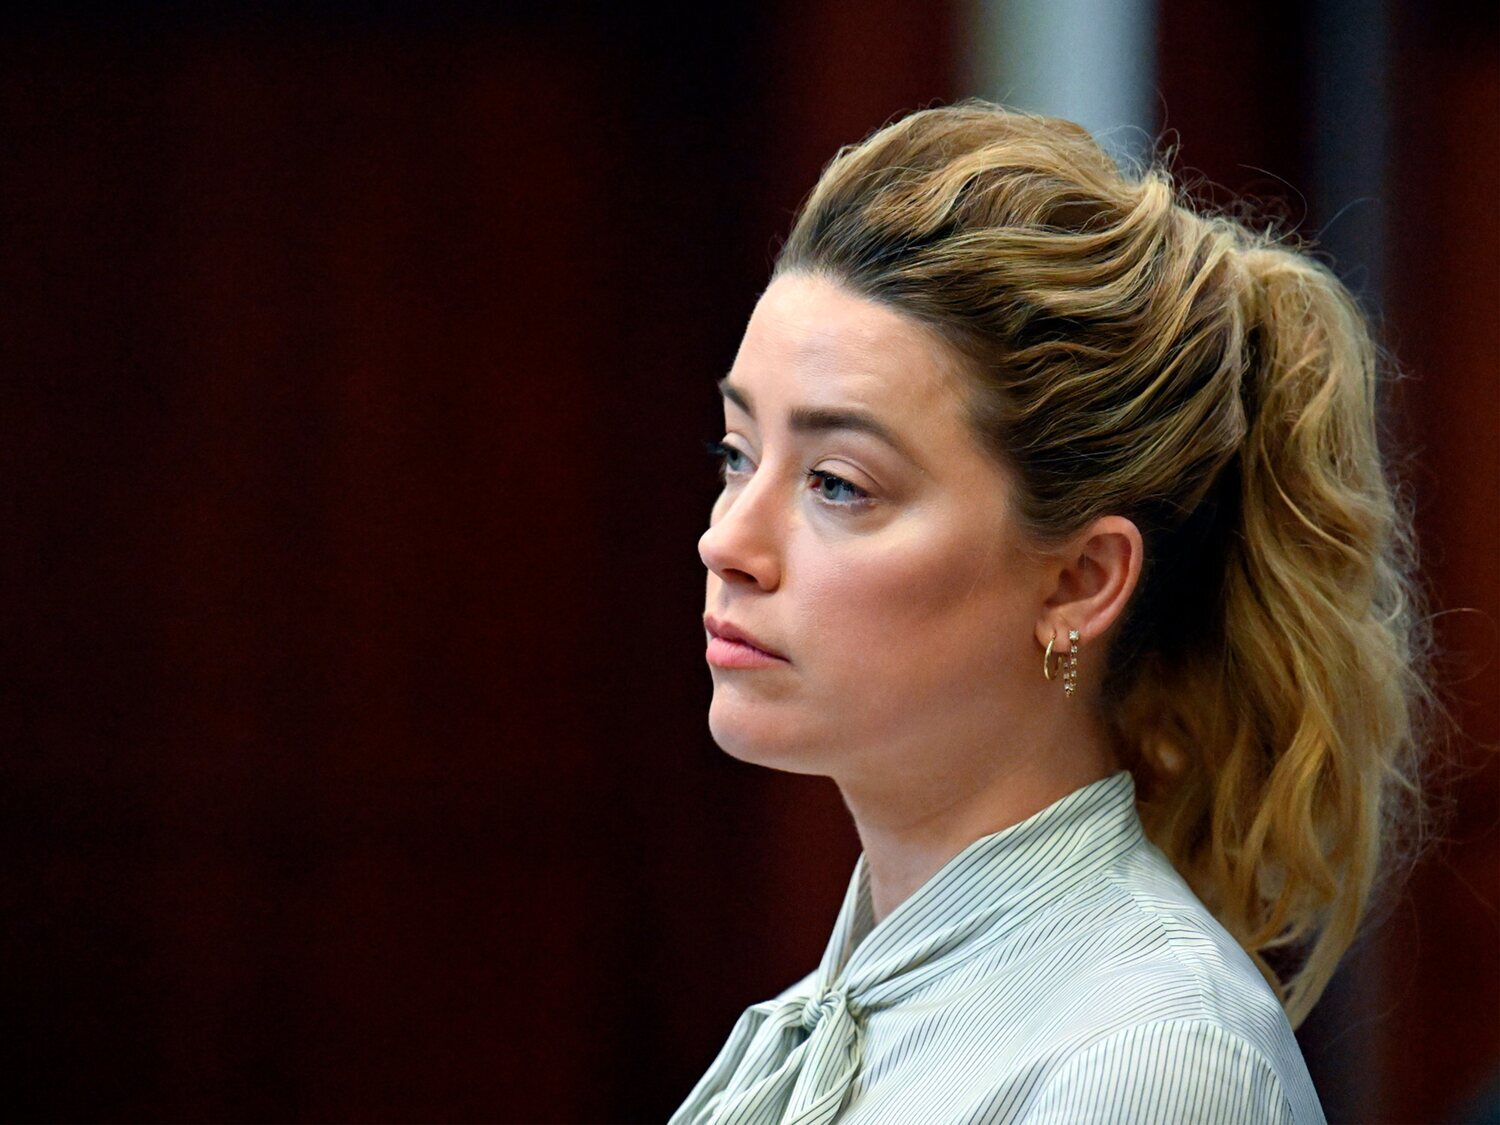 Amber Heard rompe su silencio tras el juicio: "No culpo al jurado, Johnny Depp es un actor fantástico"